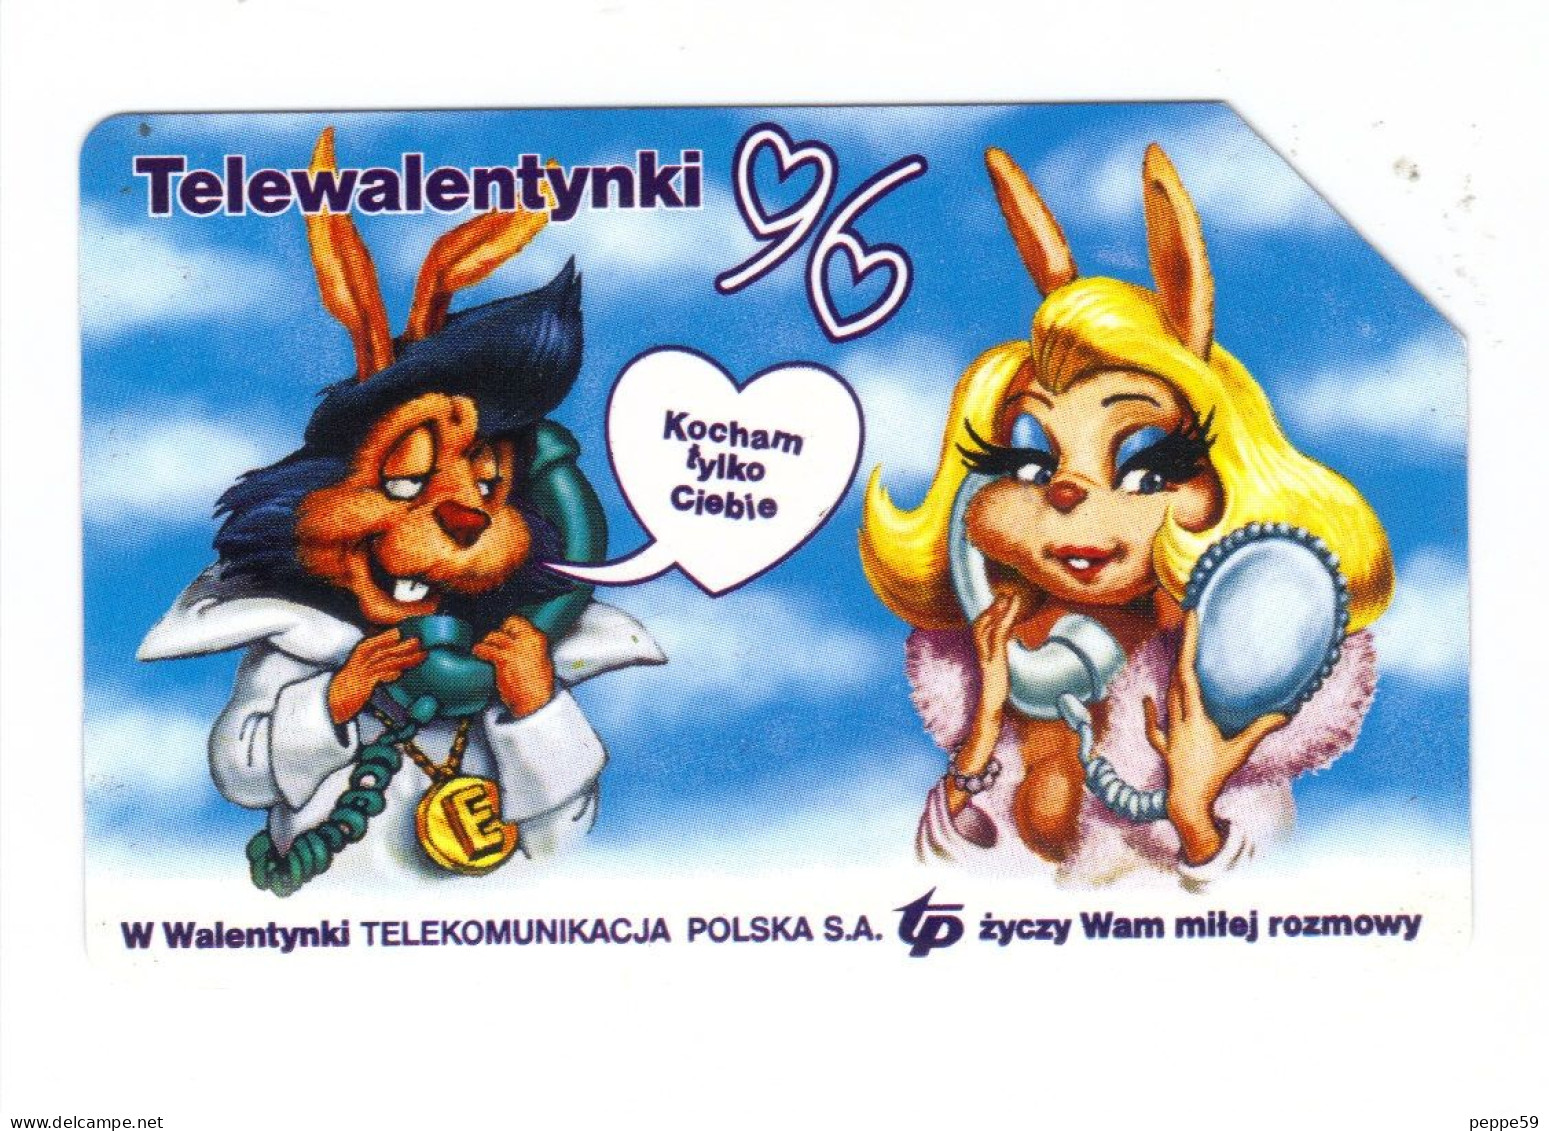 Carta Telefonica Polonia - Telewalentynki 96 - Poland